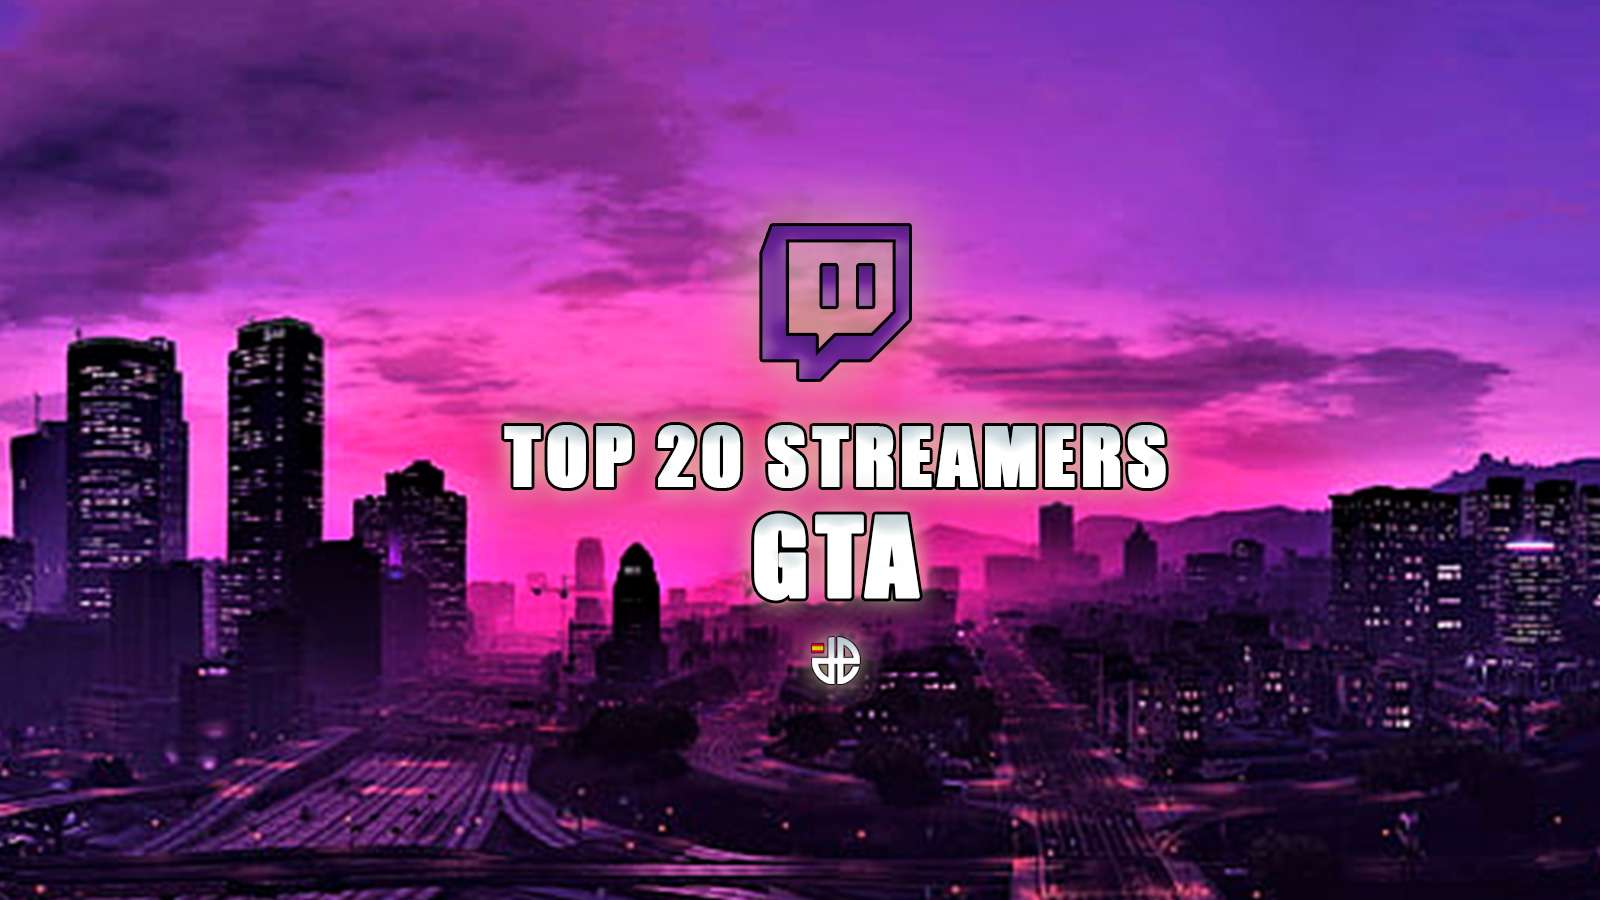 Top 20 streamers mas vistos de GTA en Twitch